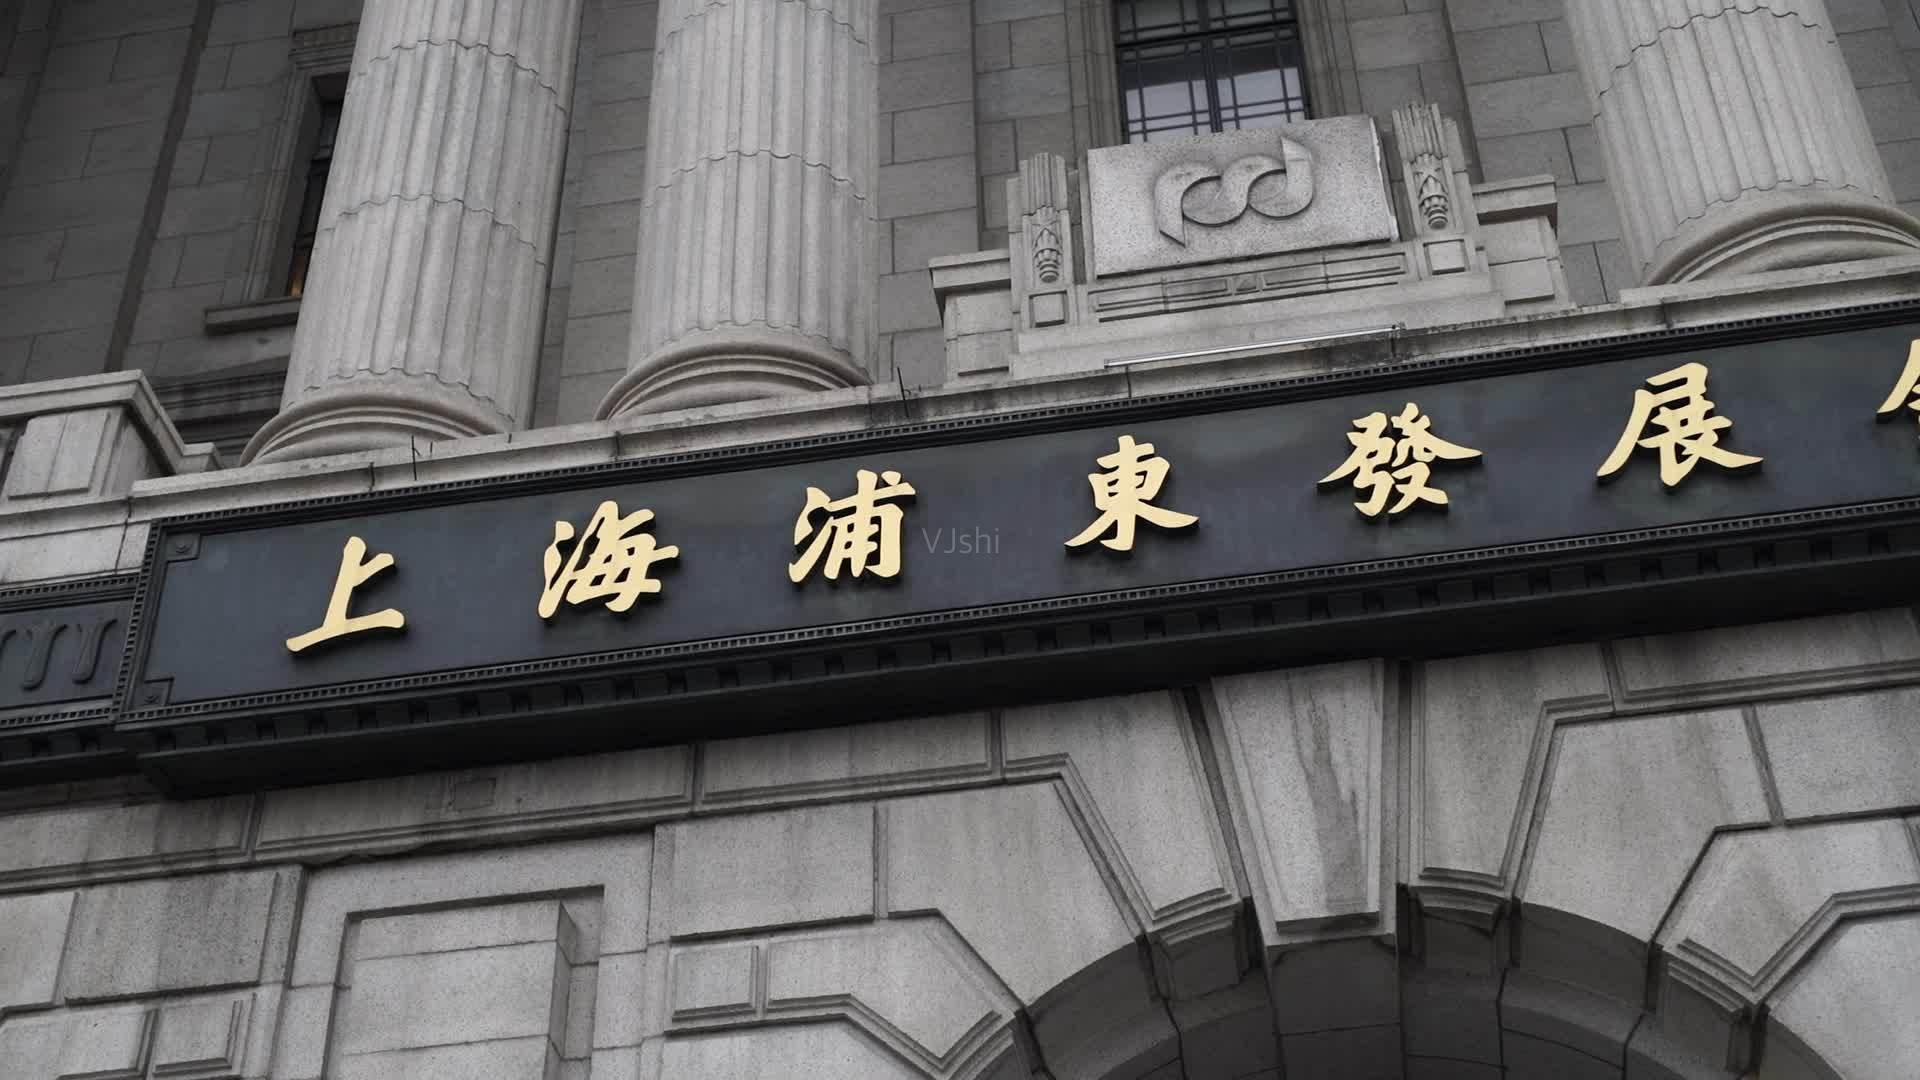 上海浦东发展银行商城使用中文域名占领品牌制高点